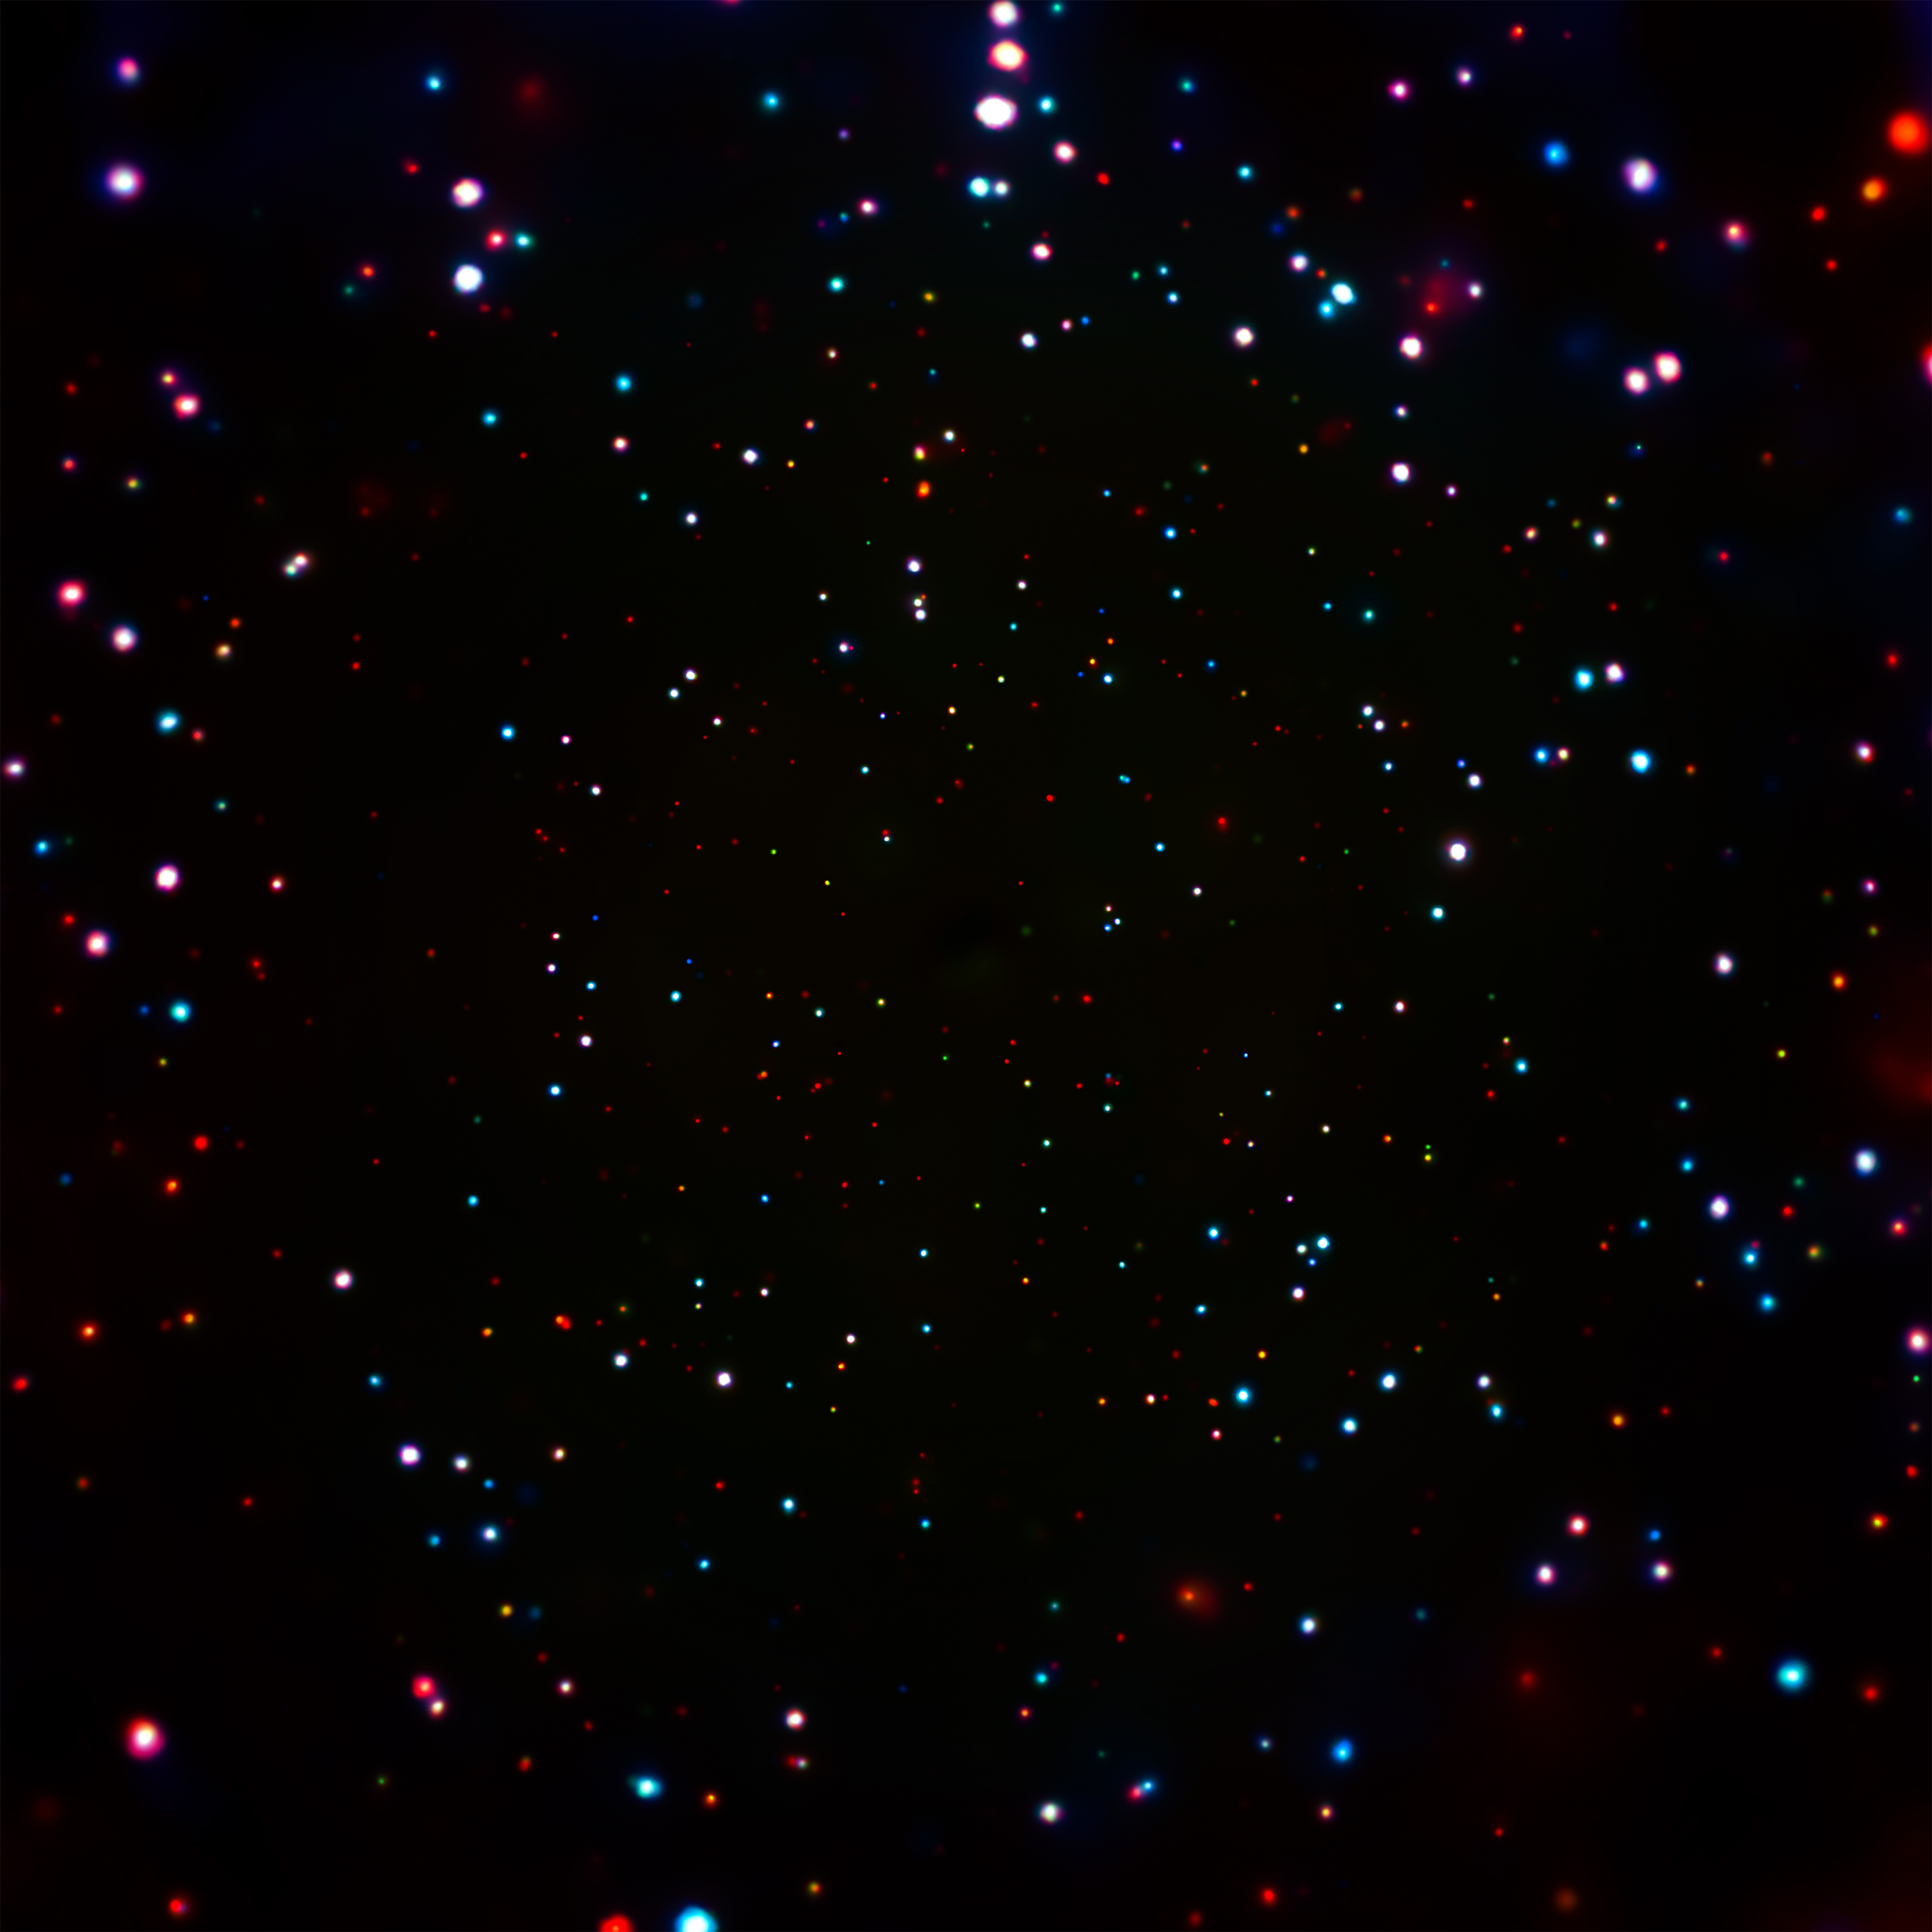 Teleskop Kosmiczny Chandra NASA -najgłębsze zdjęcie rentgenowskie, które kiedykolwiek uzyskano poprzez gromadzenie ponad 7 milionów sekund obserwując pole na przestrzeni 17 lat. 